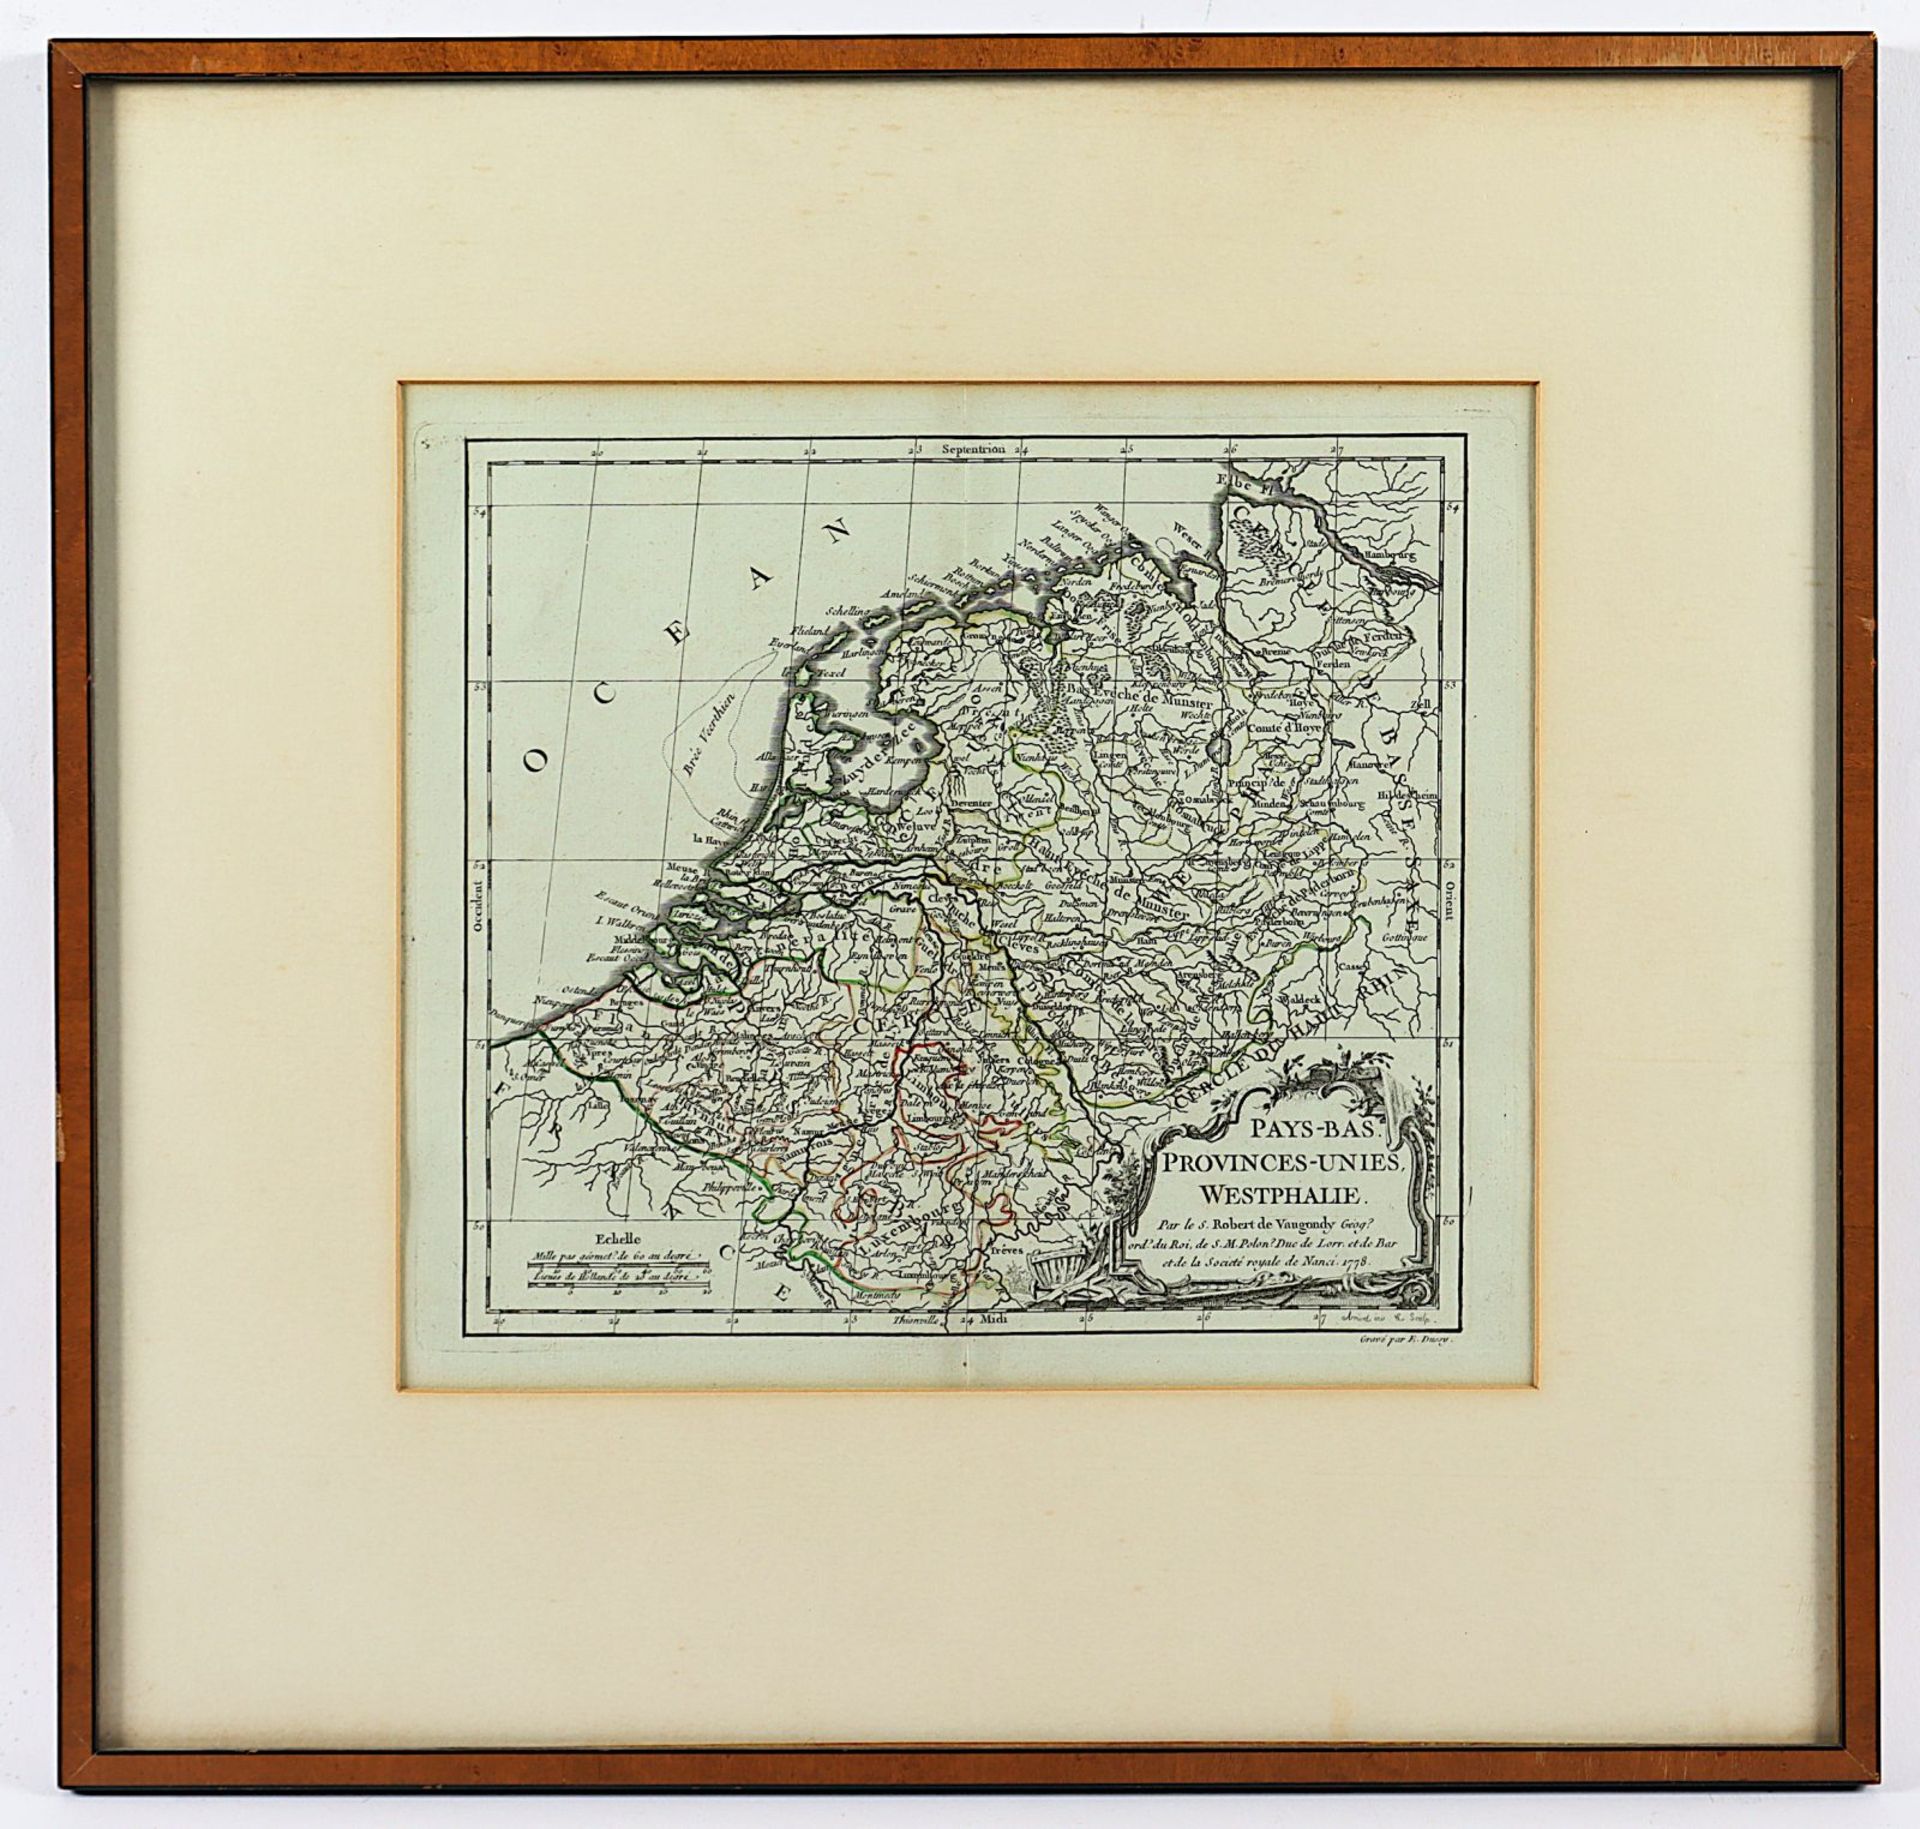 Pays-Bas Provinces-Unies Westphalie, Kupferstich koloriert, E. Dussy, 1778, R.